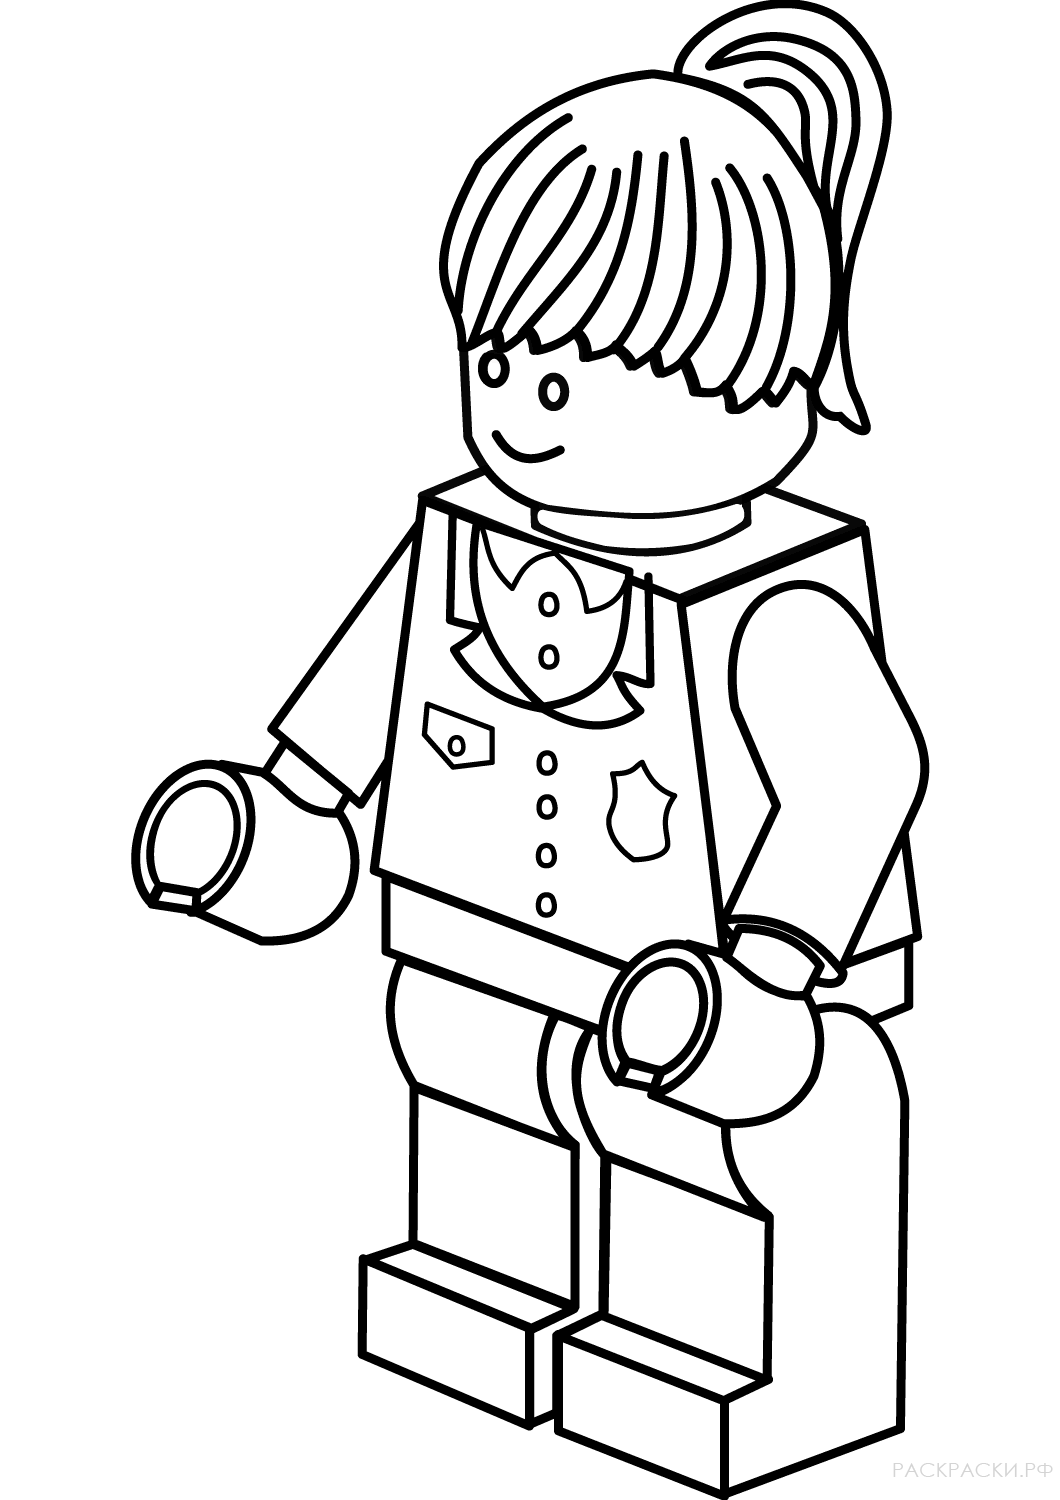 Раскраска Лего Женщина Полицейский